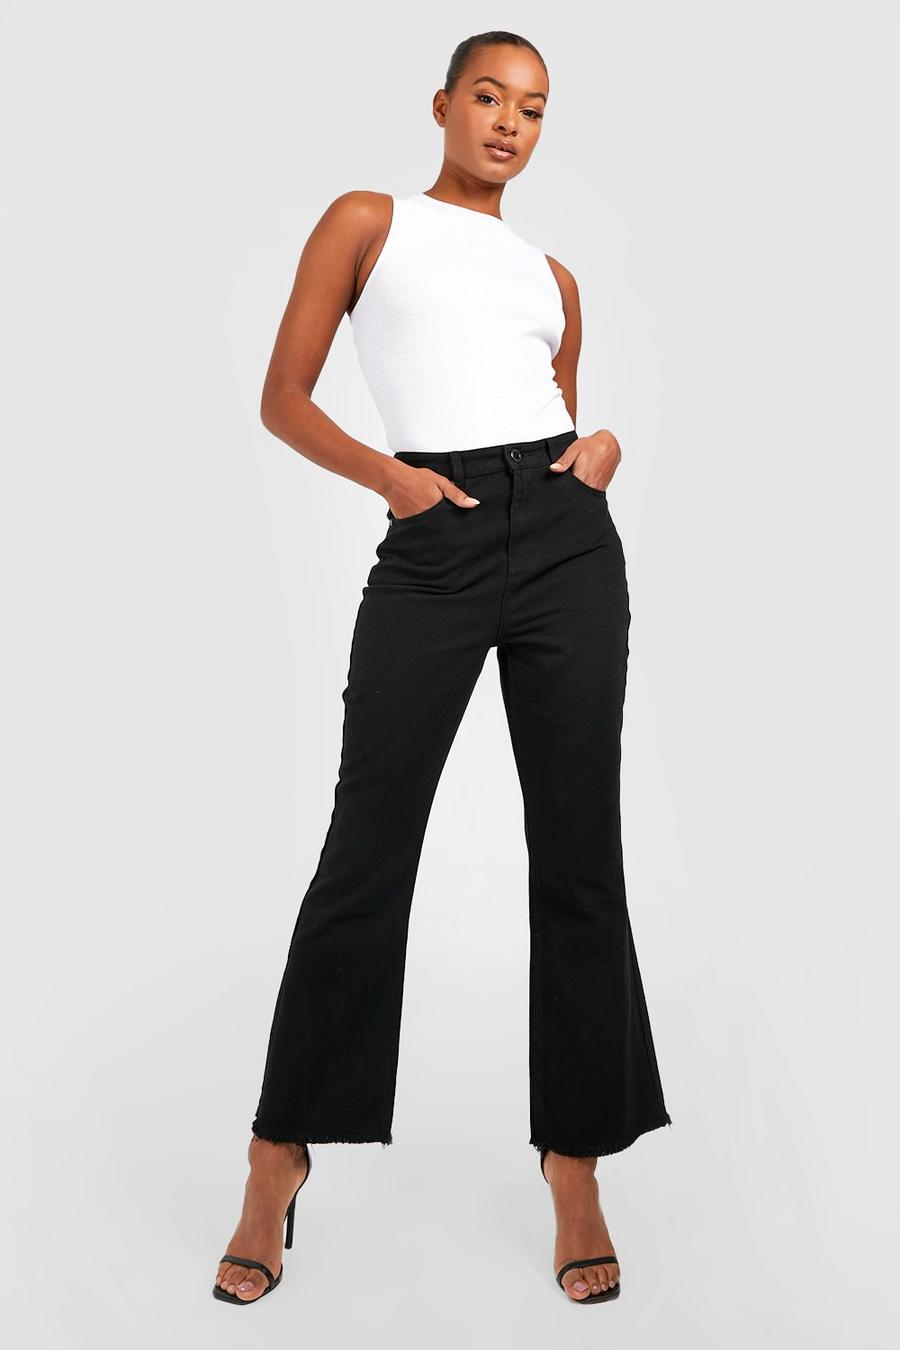 https://media.boohoo.com/i/boohoo/gzz34245_black_xl/female-black-tall-high-rise-frayed-hem-kick-flare-jeans/?w=900&qlt=default&fmt.jp2.qlt=70&fmt=auto&sm=fit